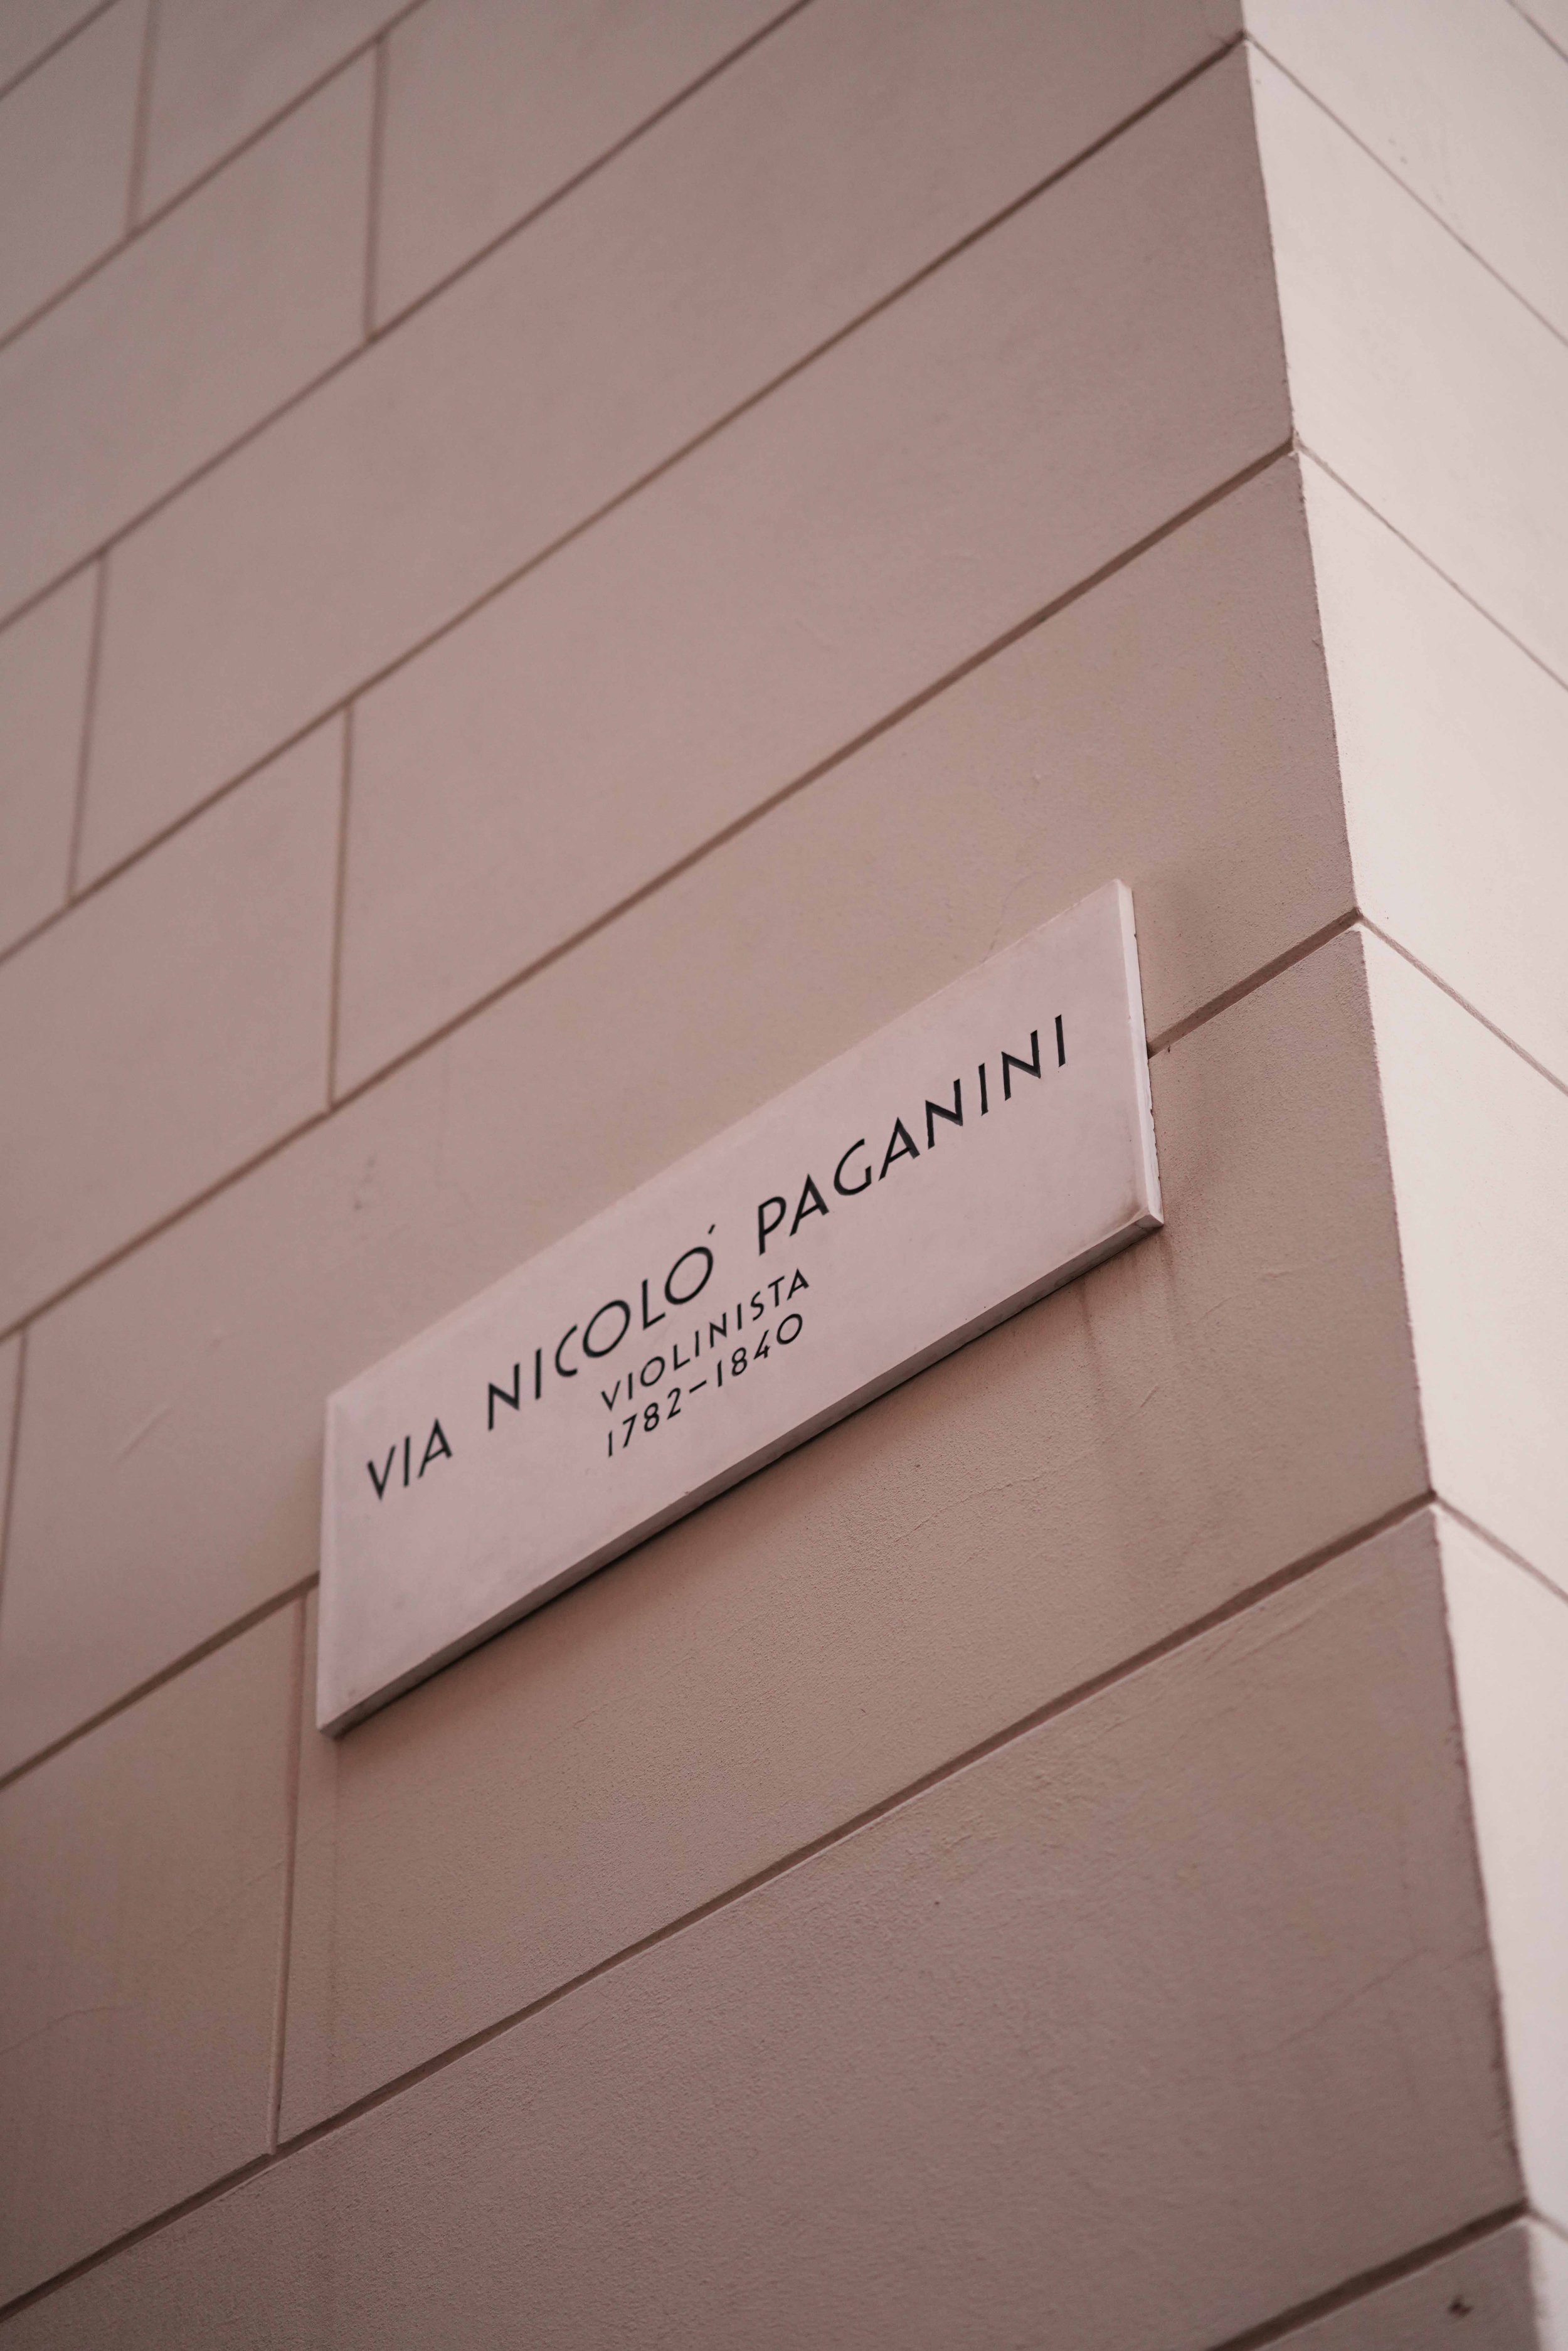  Via Niccolo Paganini in Trieste 